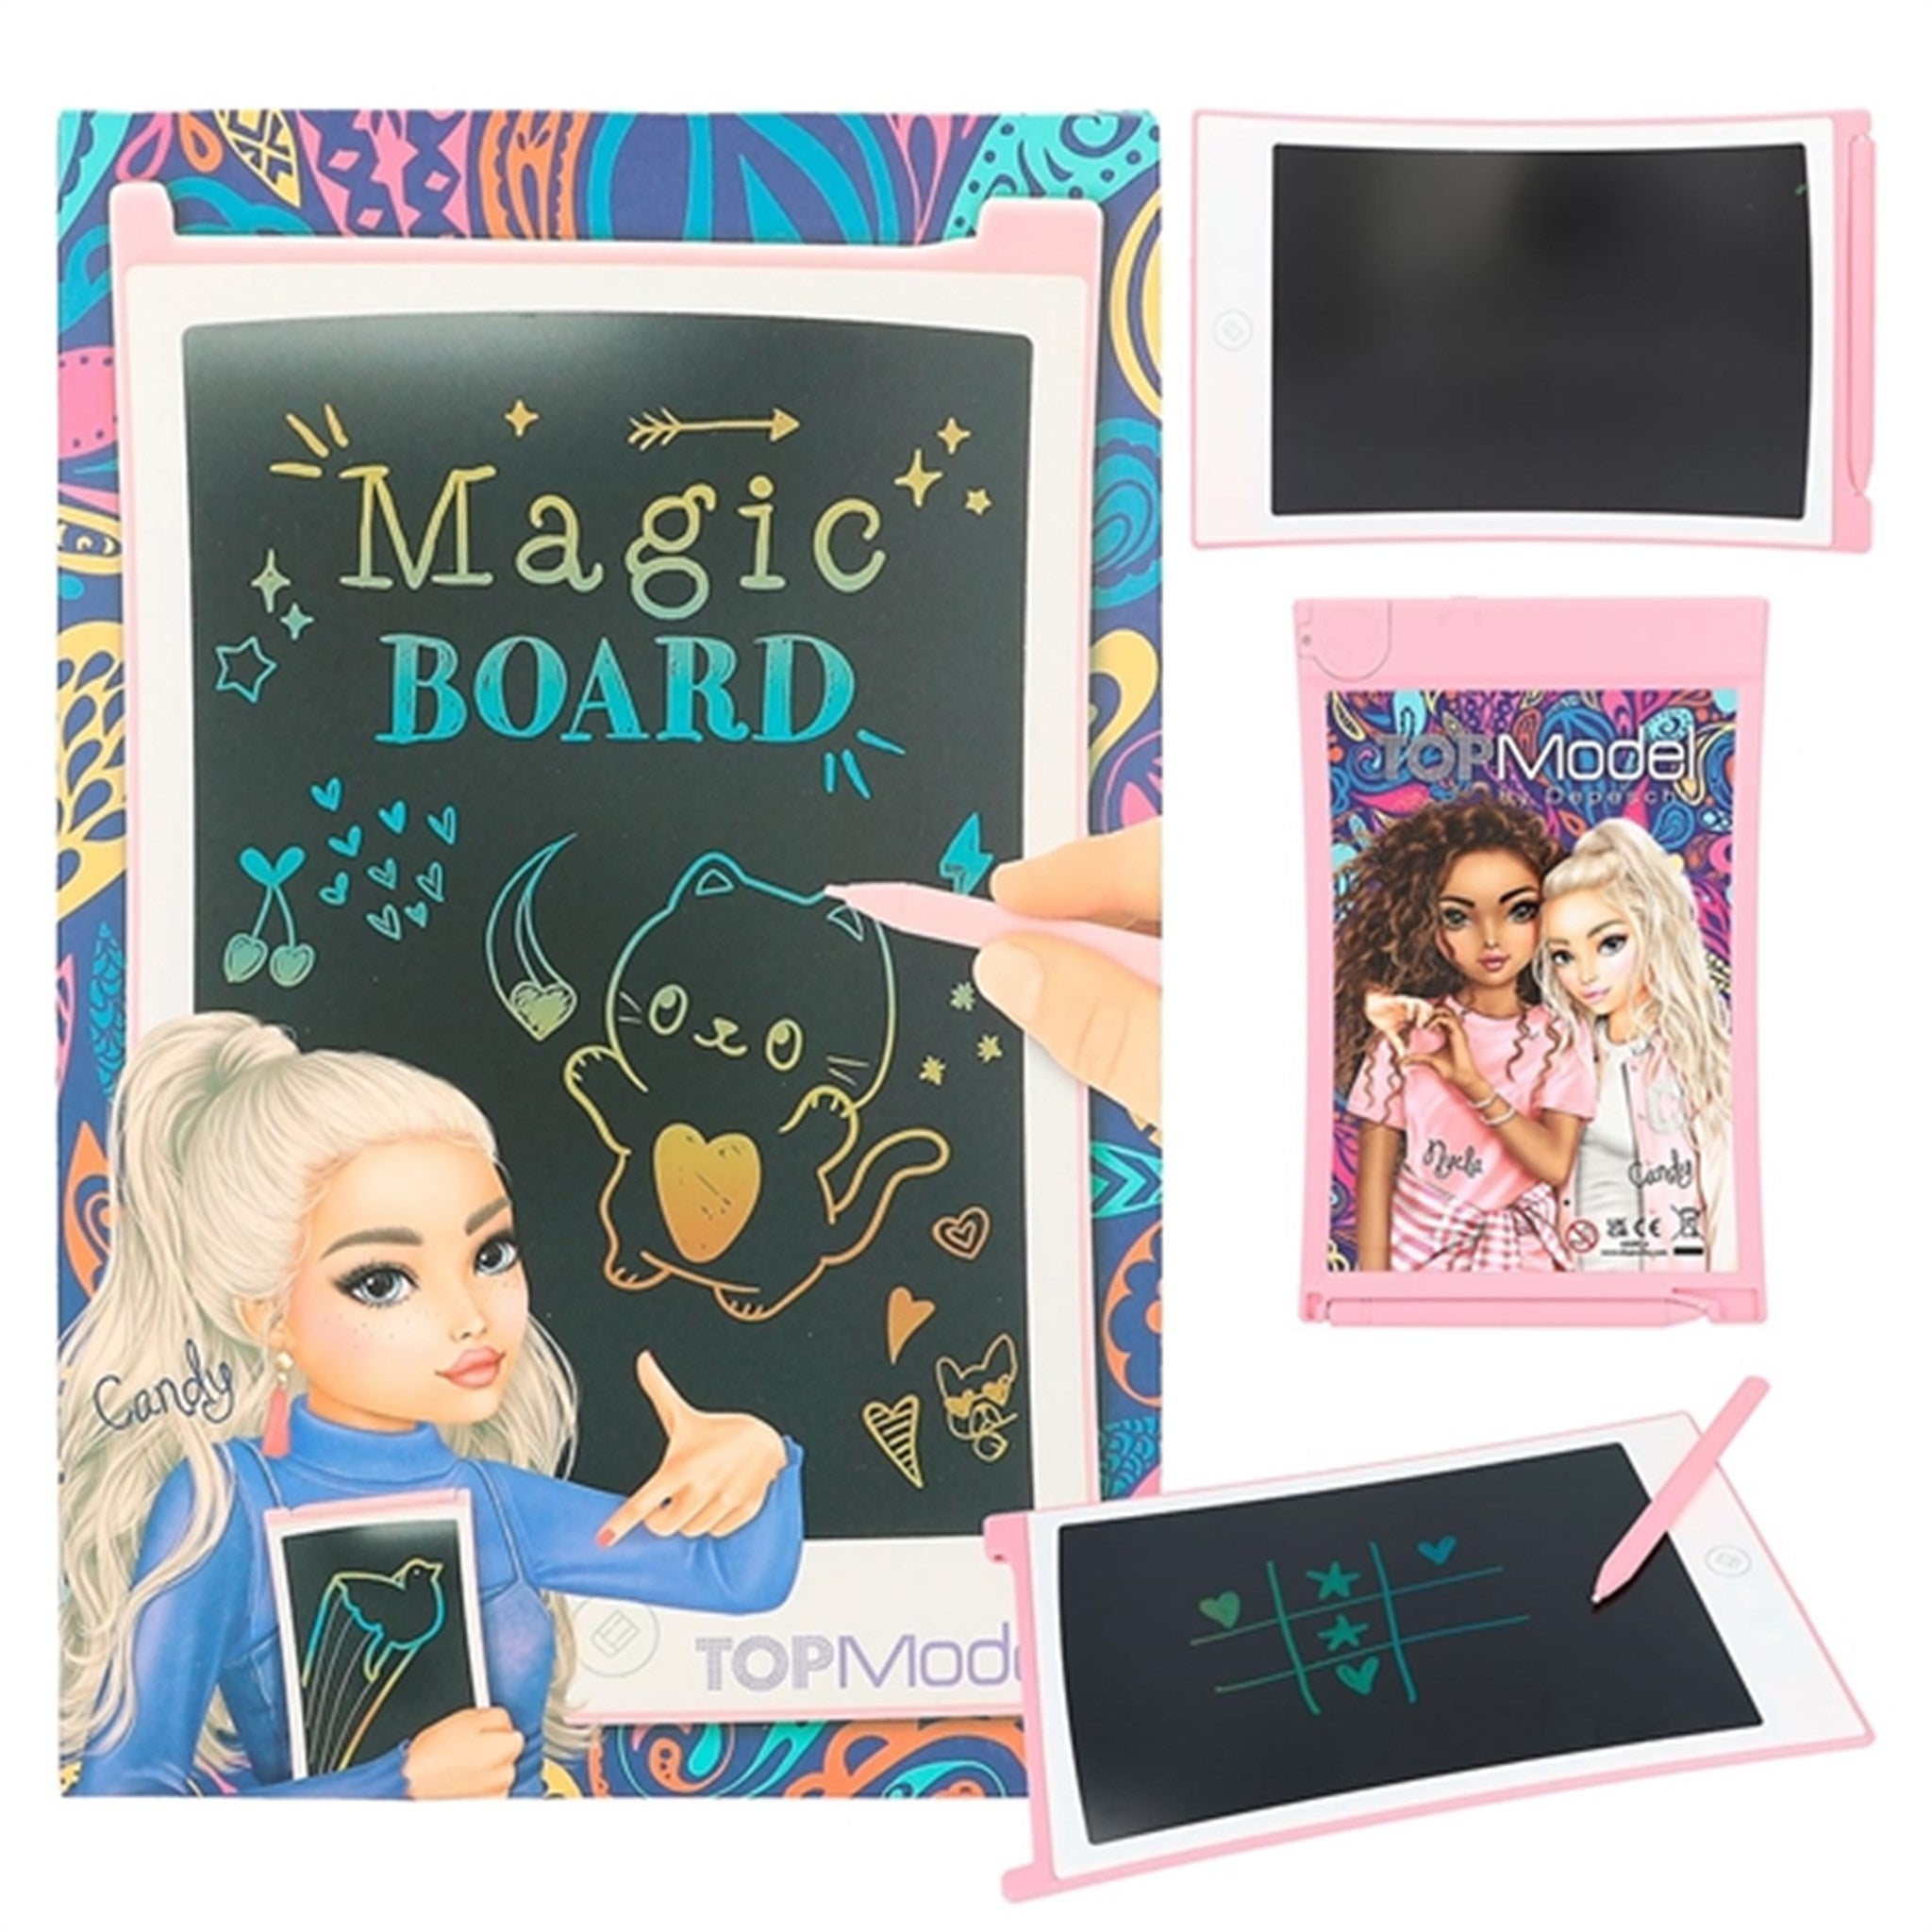 TOPModel Magical Board